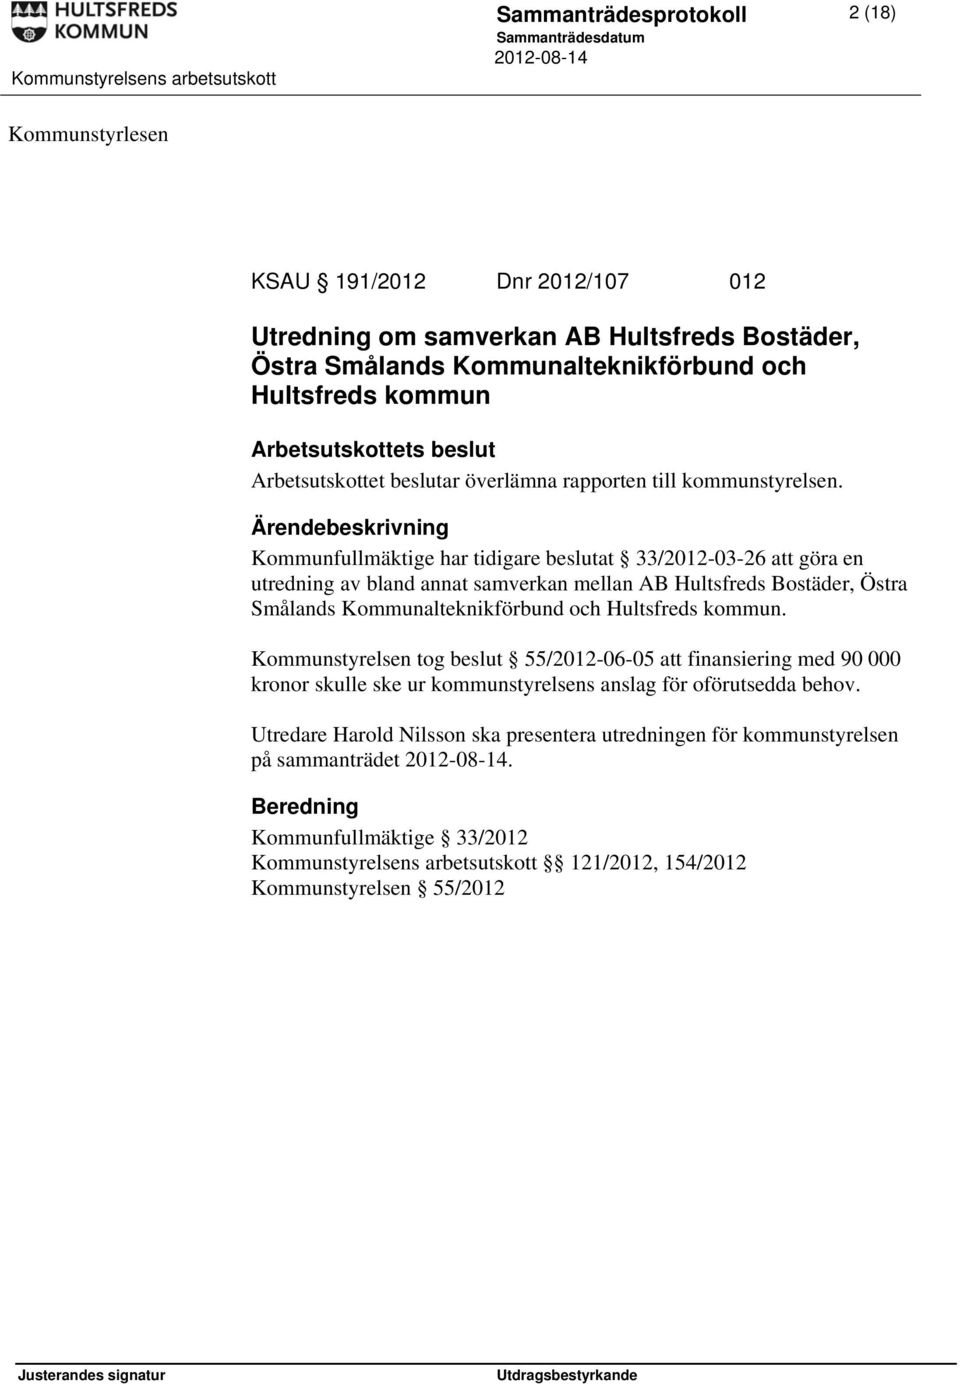 Kommunfullmäktige har tidigare beslutat 33/2012-03-26 att göra en utredning av bland annat samverkan mellan AB Hultsfreds Bostäder, Östra Smålands Kommunalteknikförbund och Hultsfreds kommun.